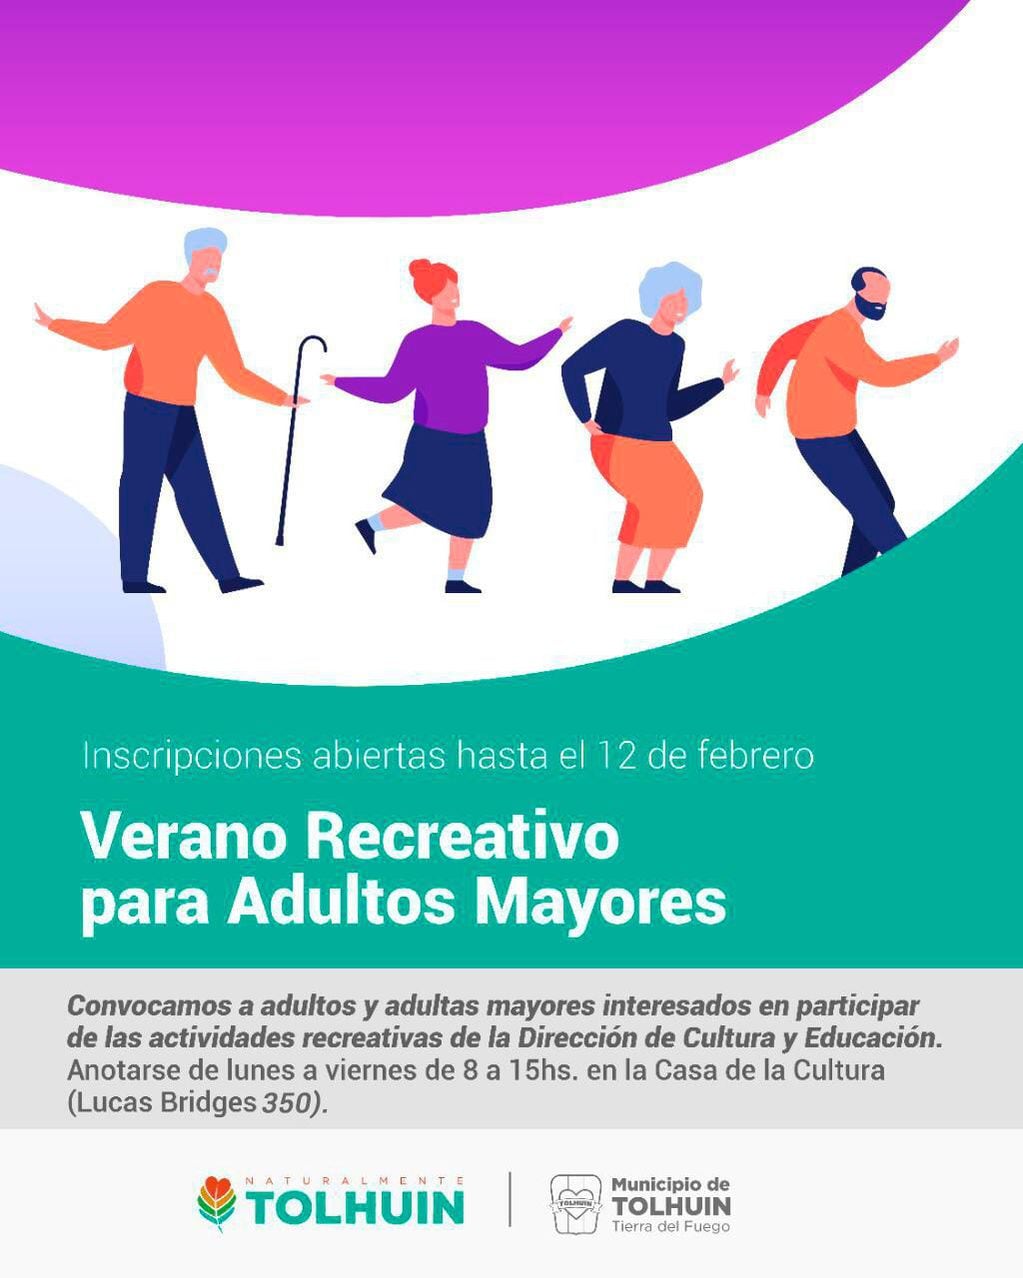 Actividades para adultos y adultas mayores a desarrollarse en los próximos días en las instalaciones de la Casa de la Cultura.